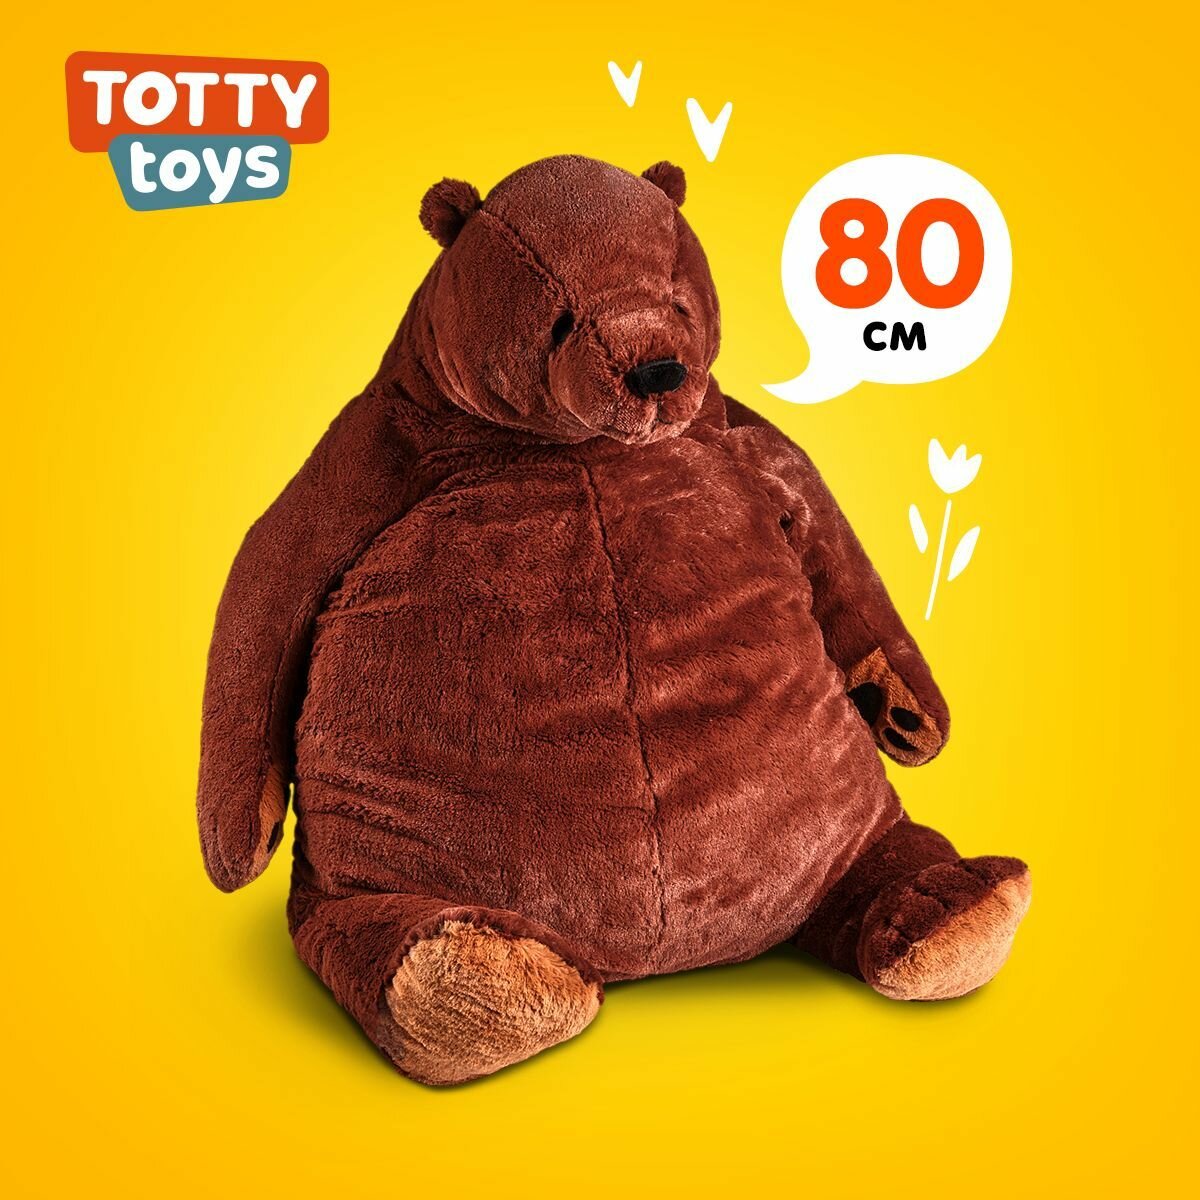 Мягкая игрушка Totty toys медведь икеа, коричневый, 80 см